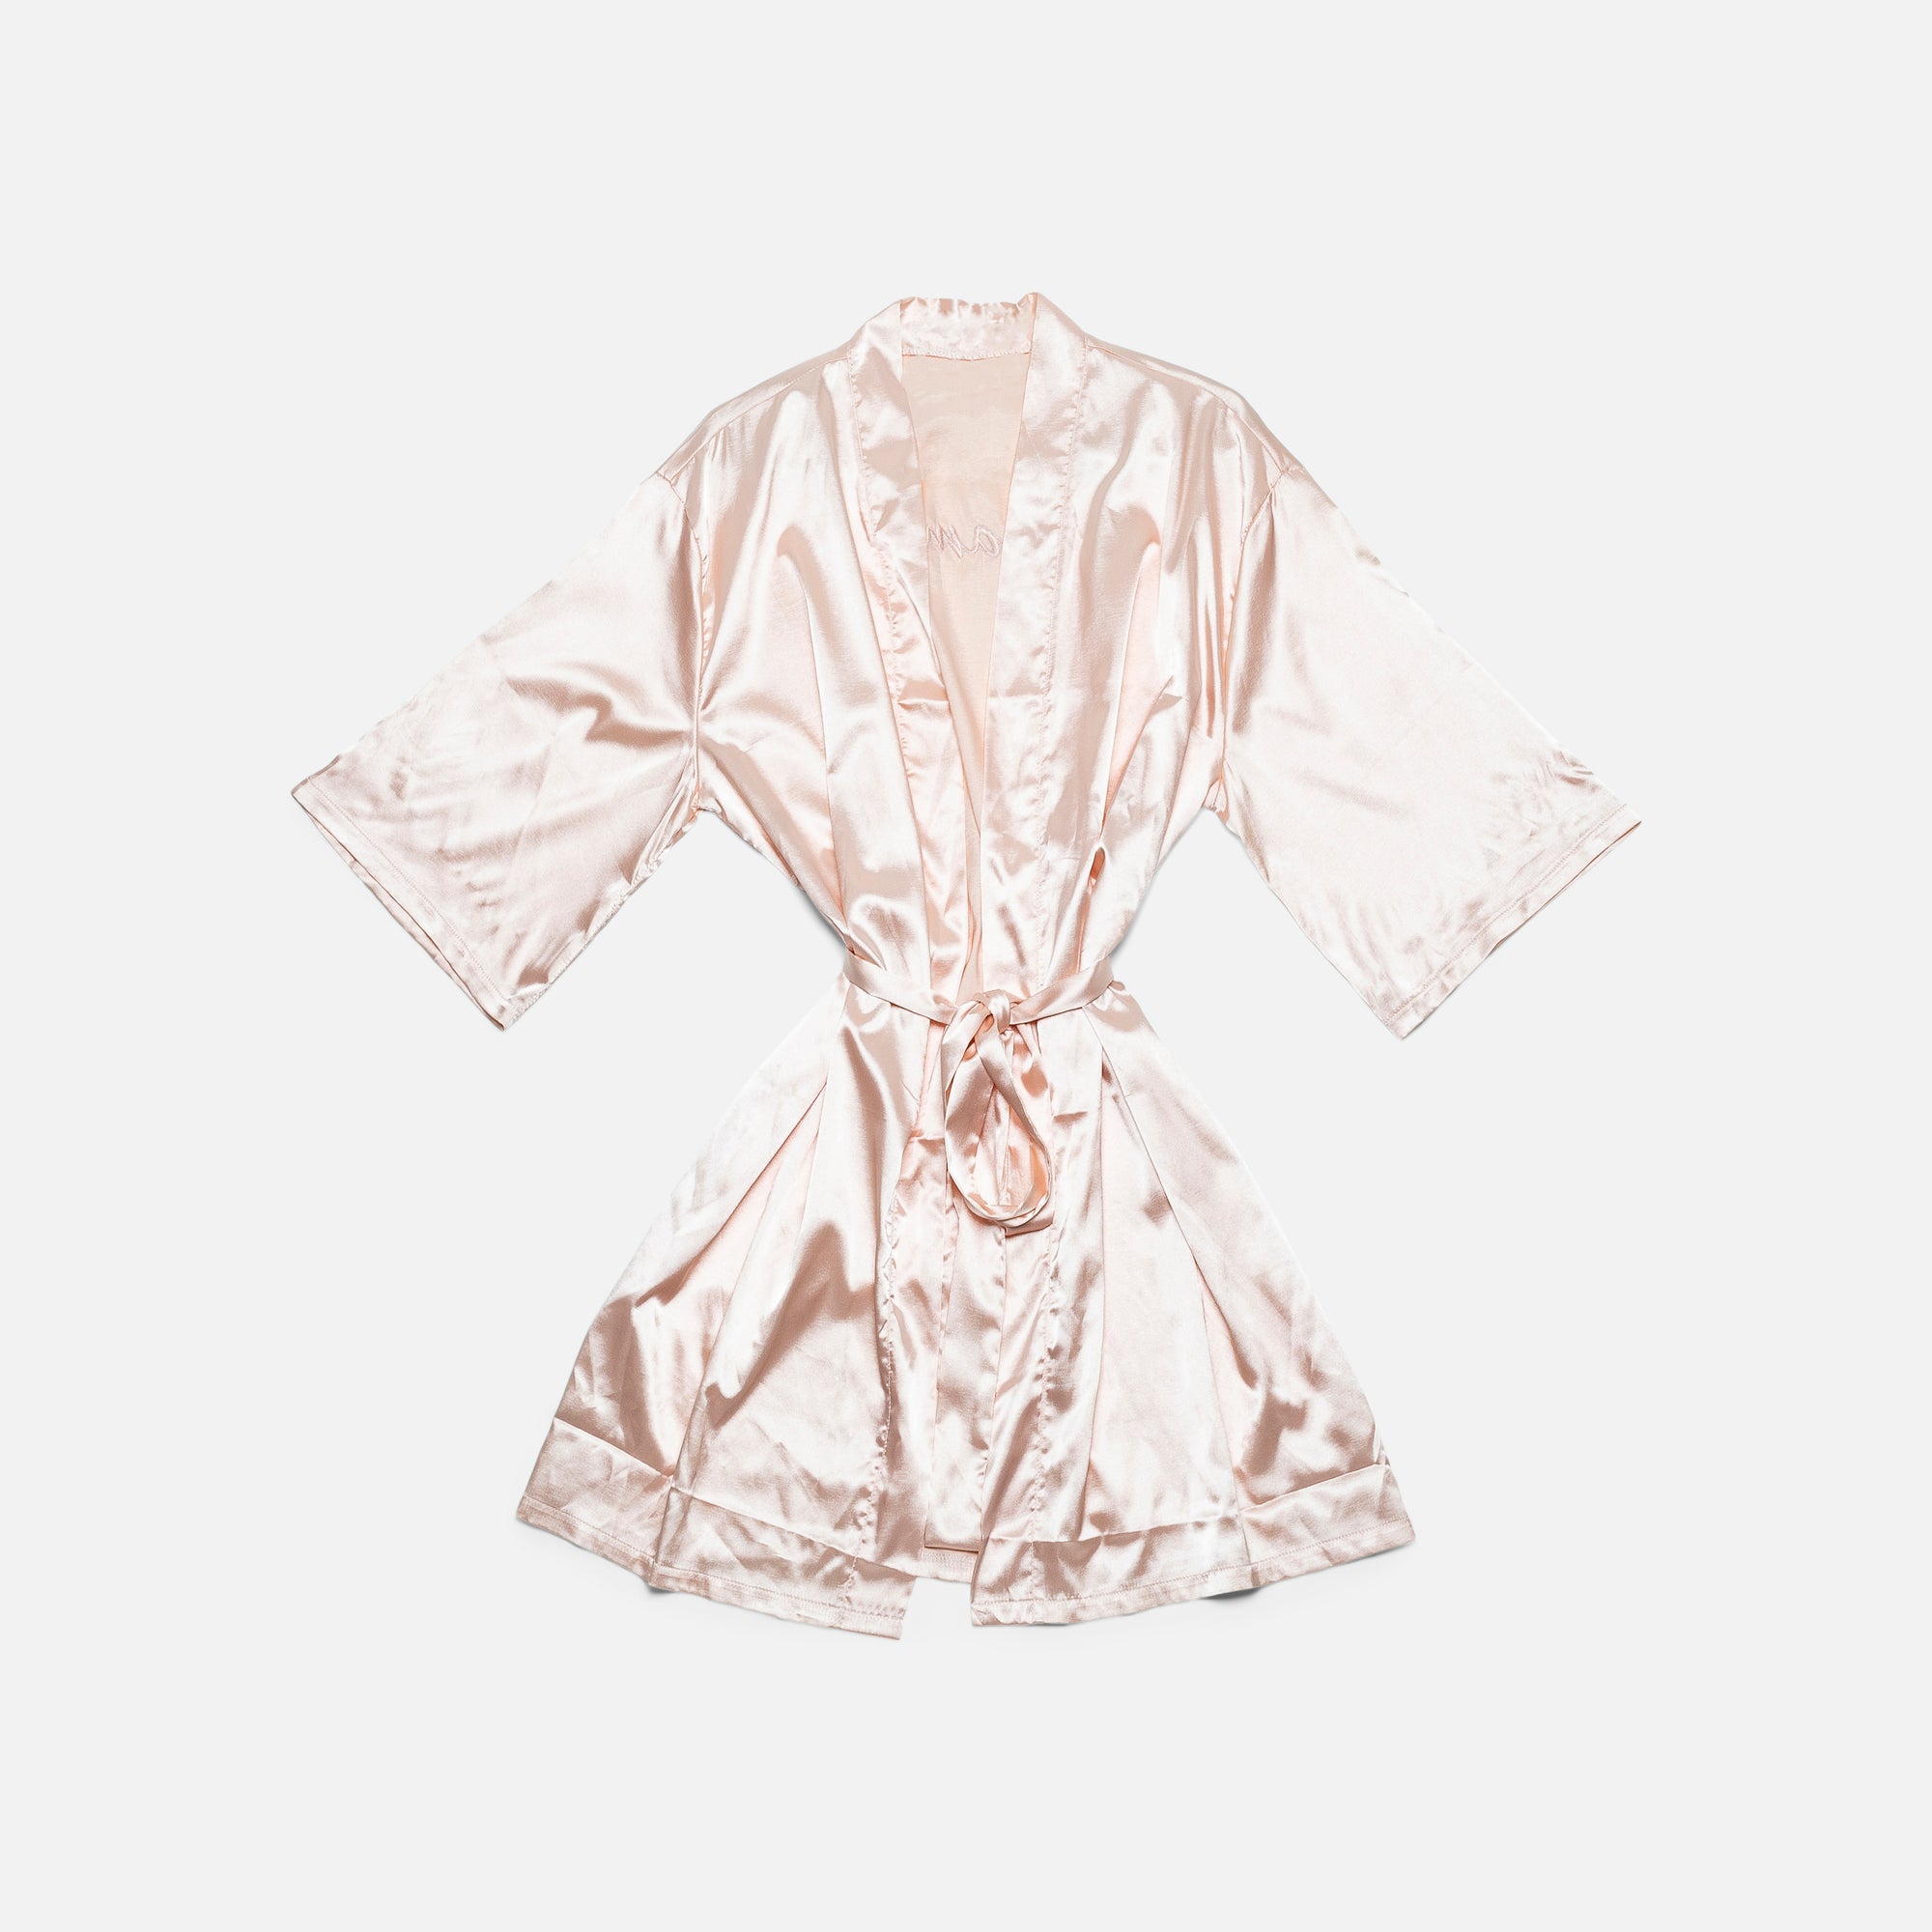 Pink silk kimono with "dreamer" inscription